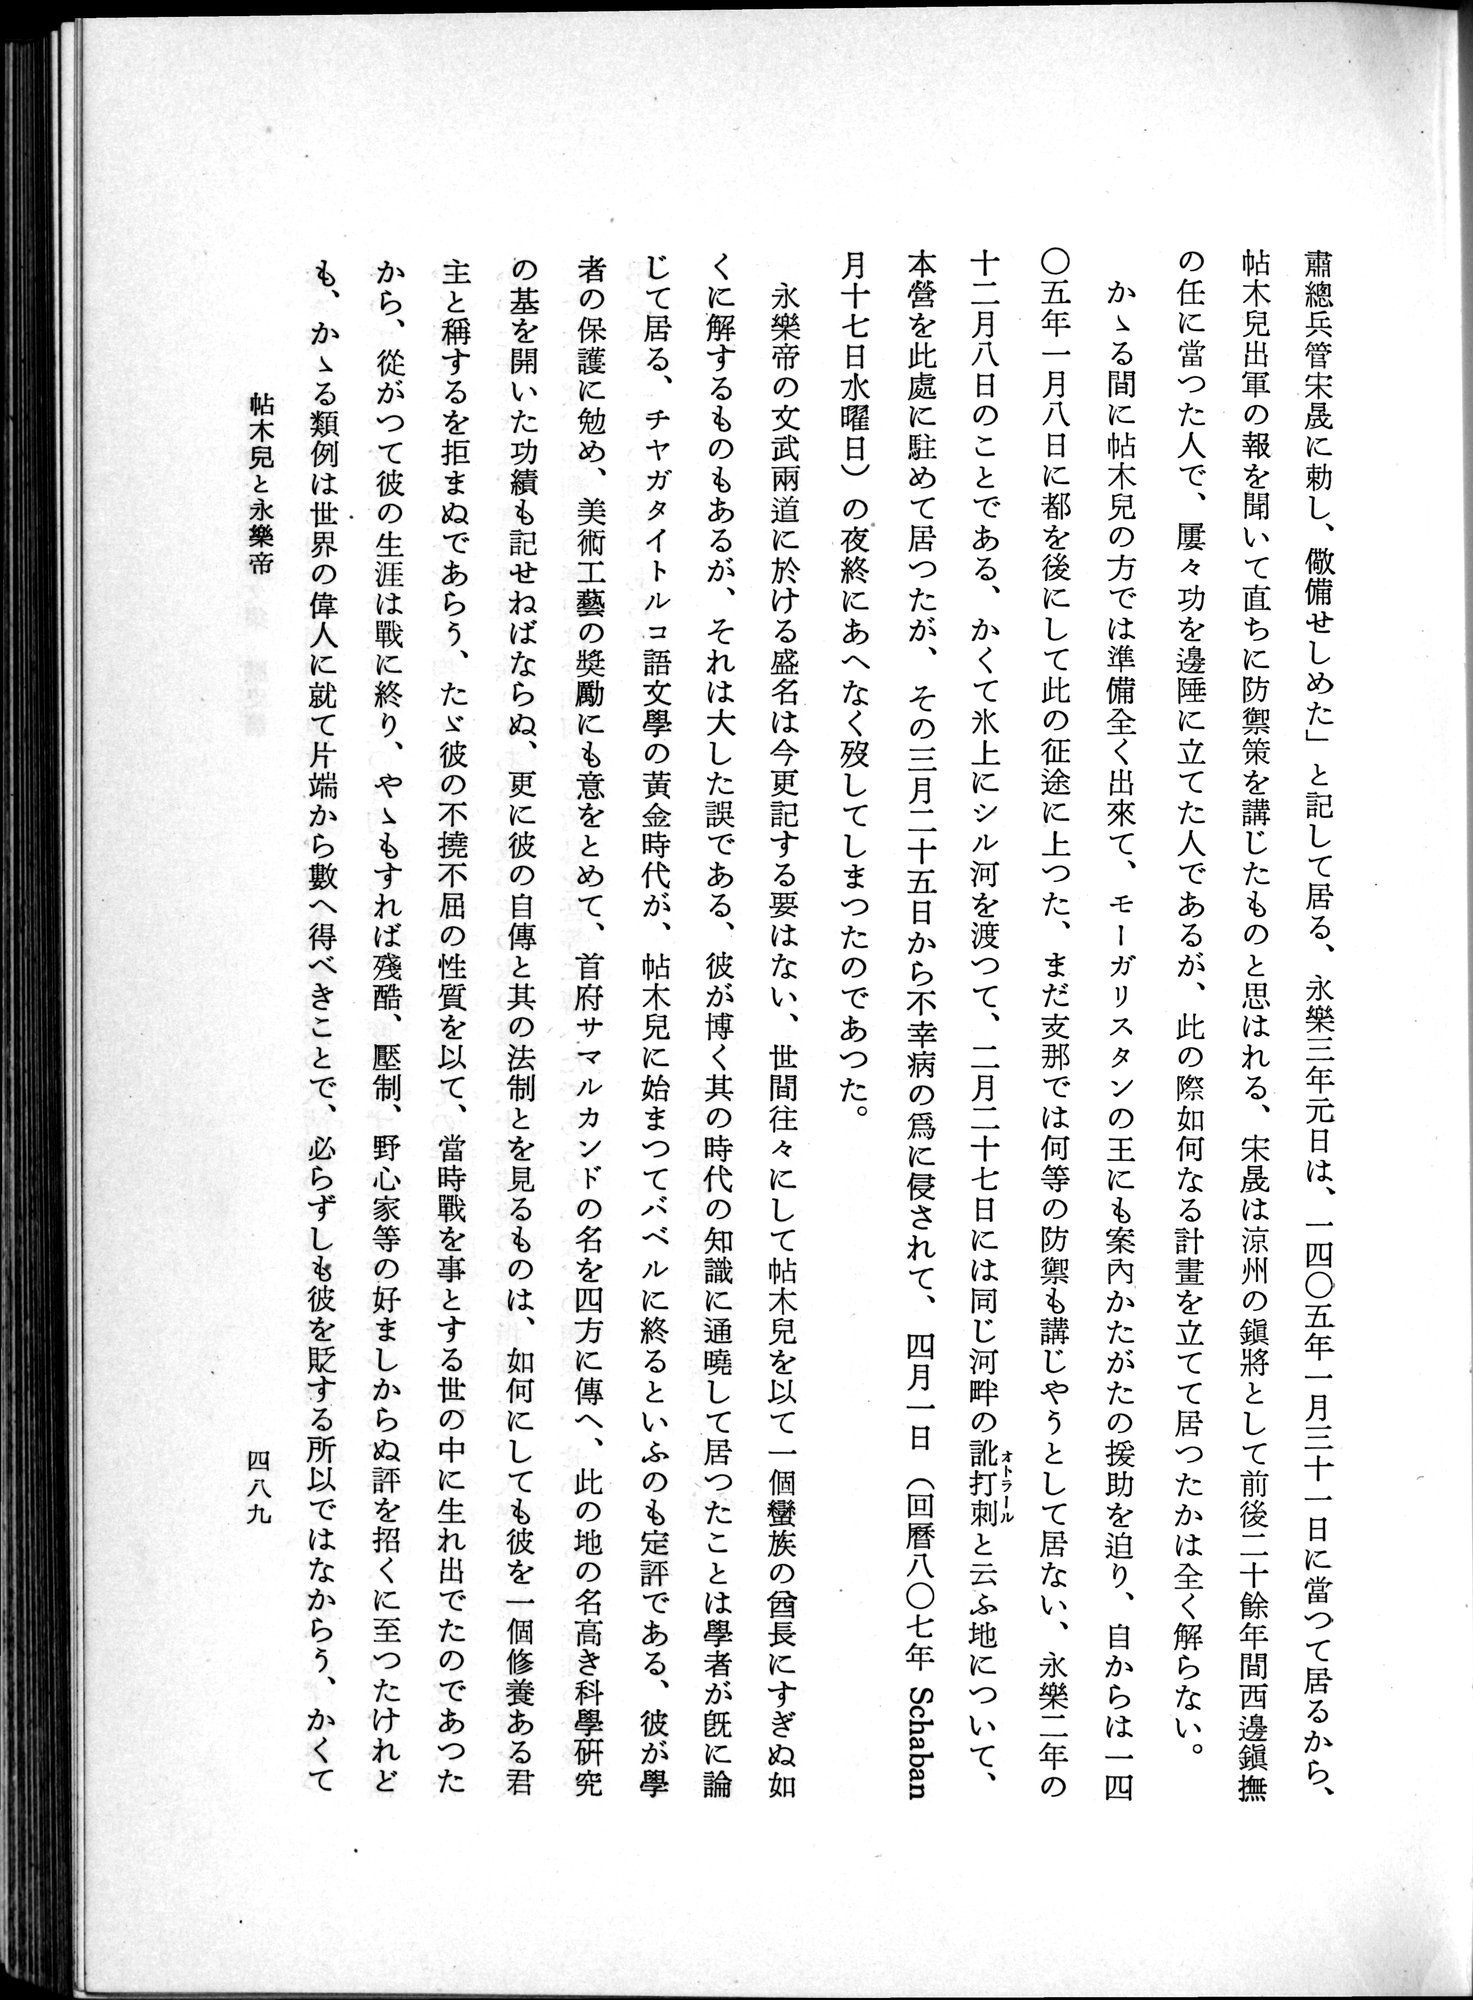 羽田博士史学論文集 : vol.1 / Page 527 (Grayscale High Resolution Image)